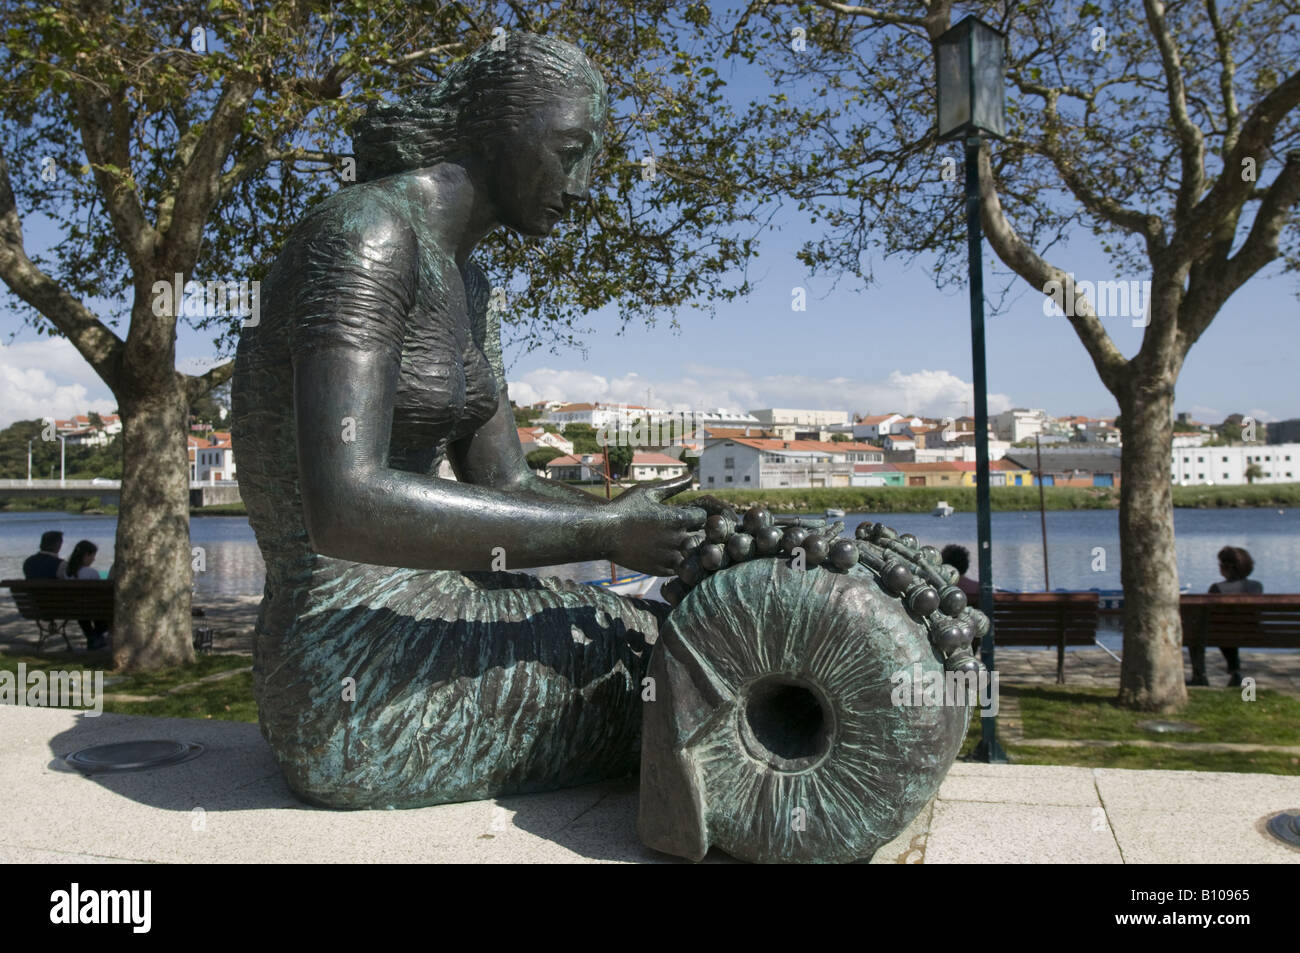 'Renda de Bilros' statue, Vila do Conde, Portugal Stock Photo